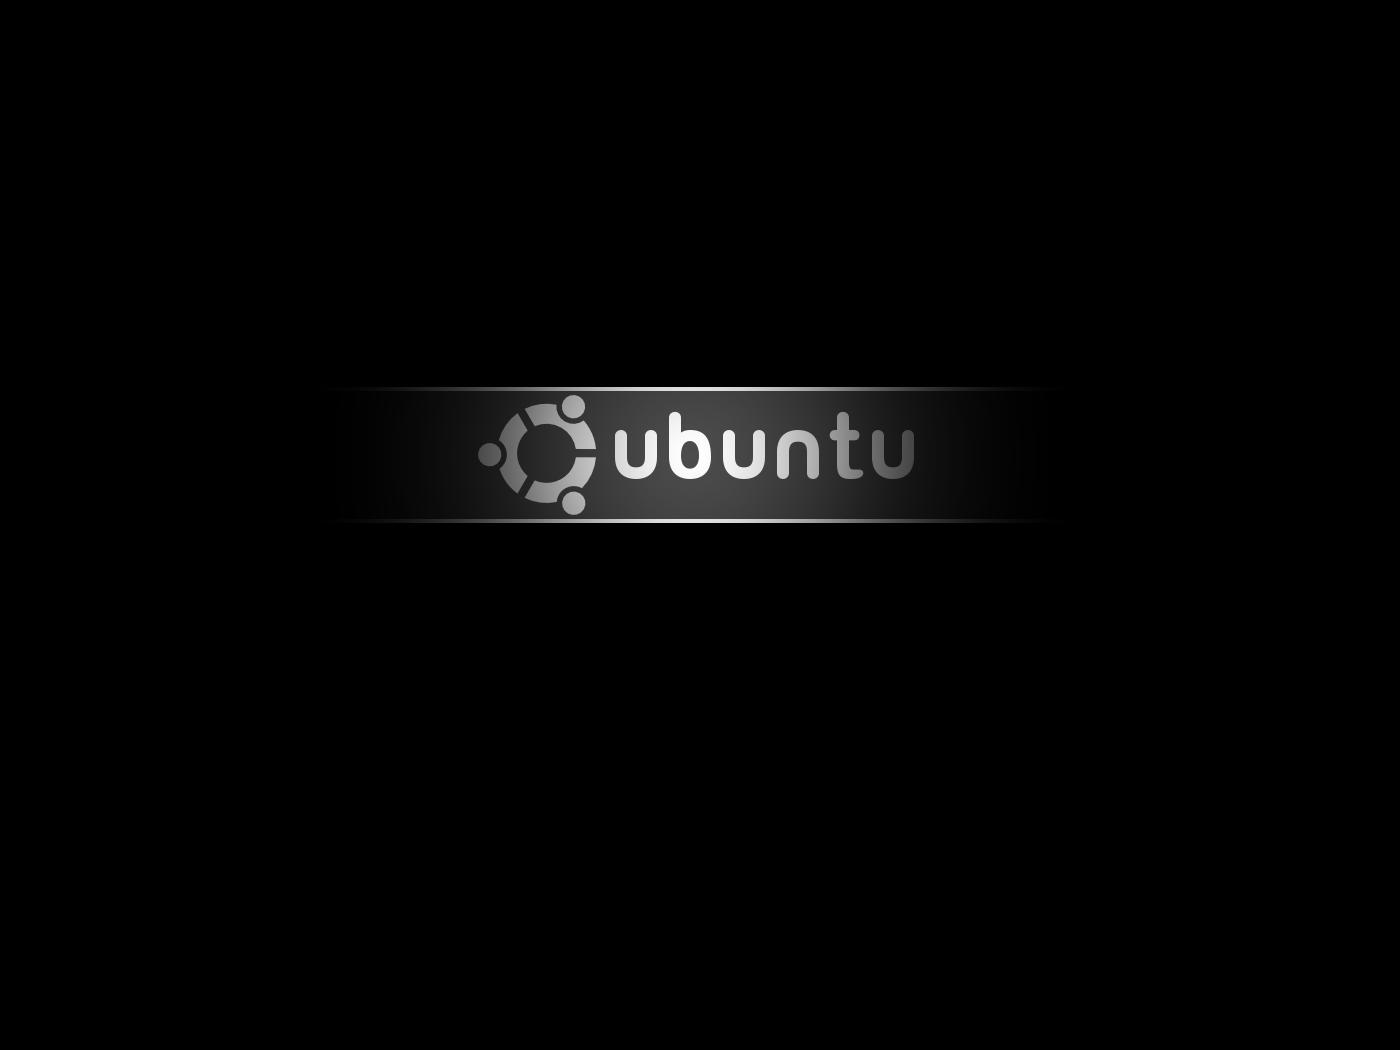 Ubuntu Black Wallpaper